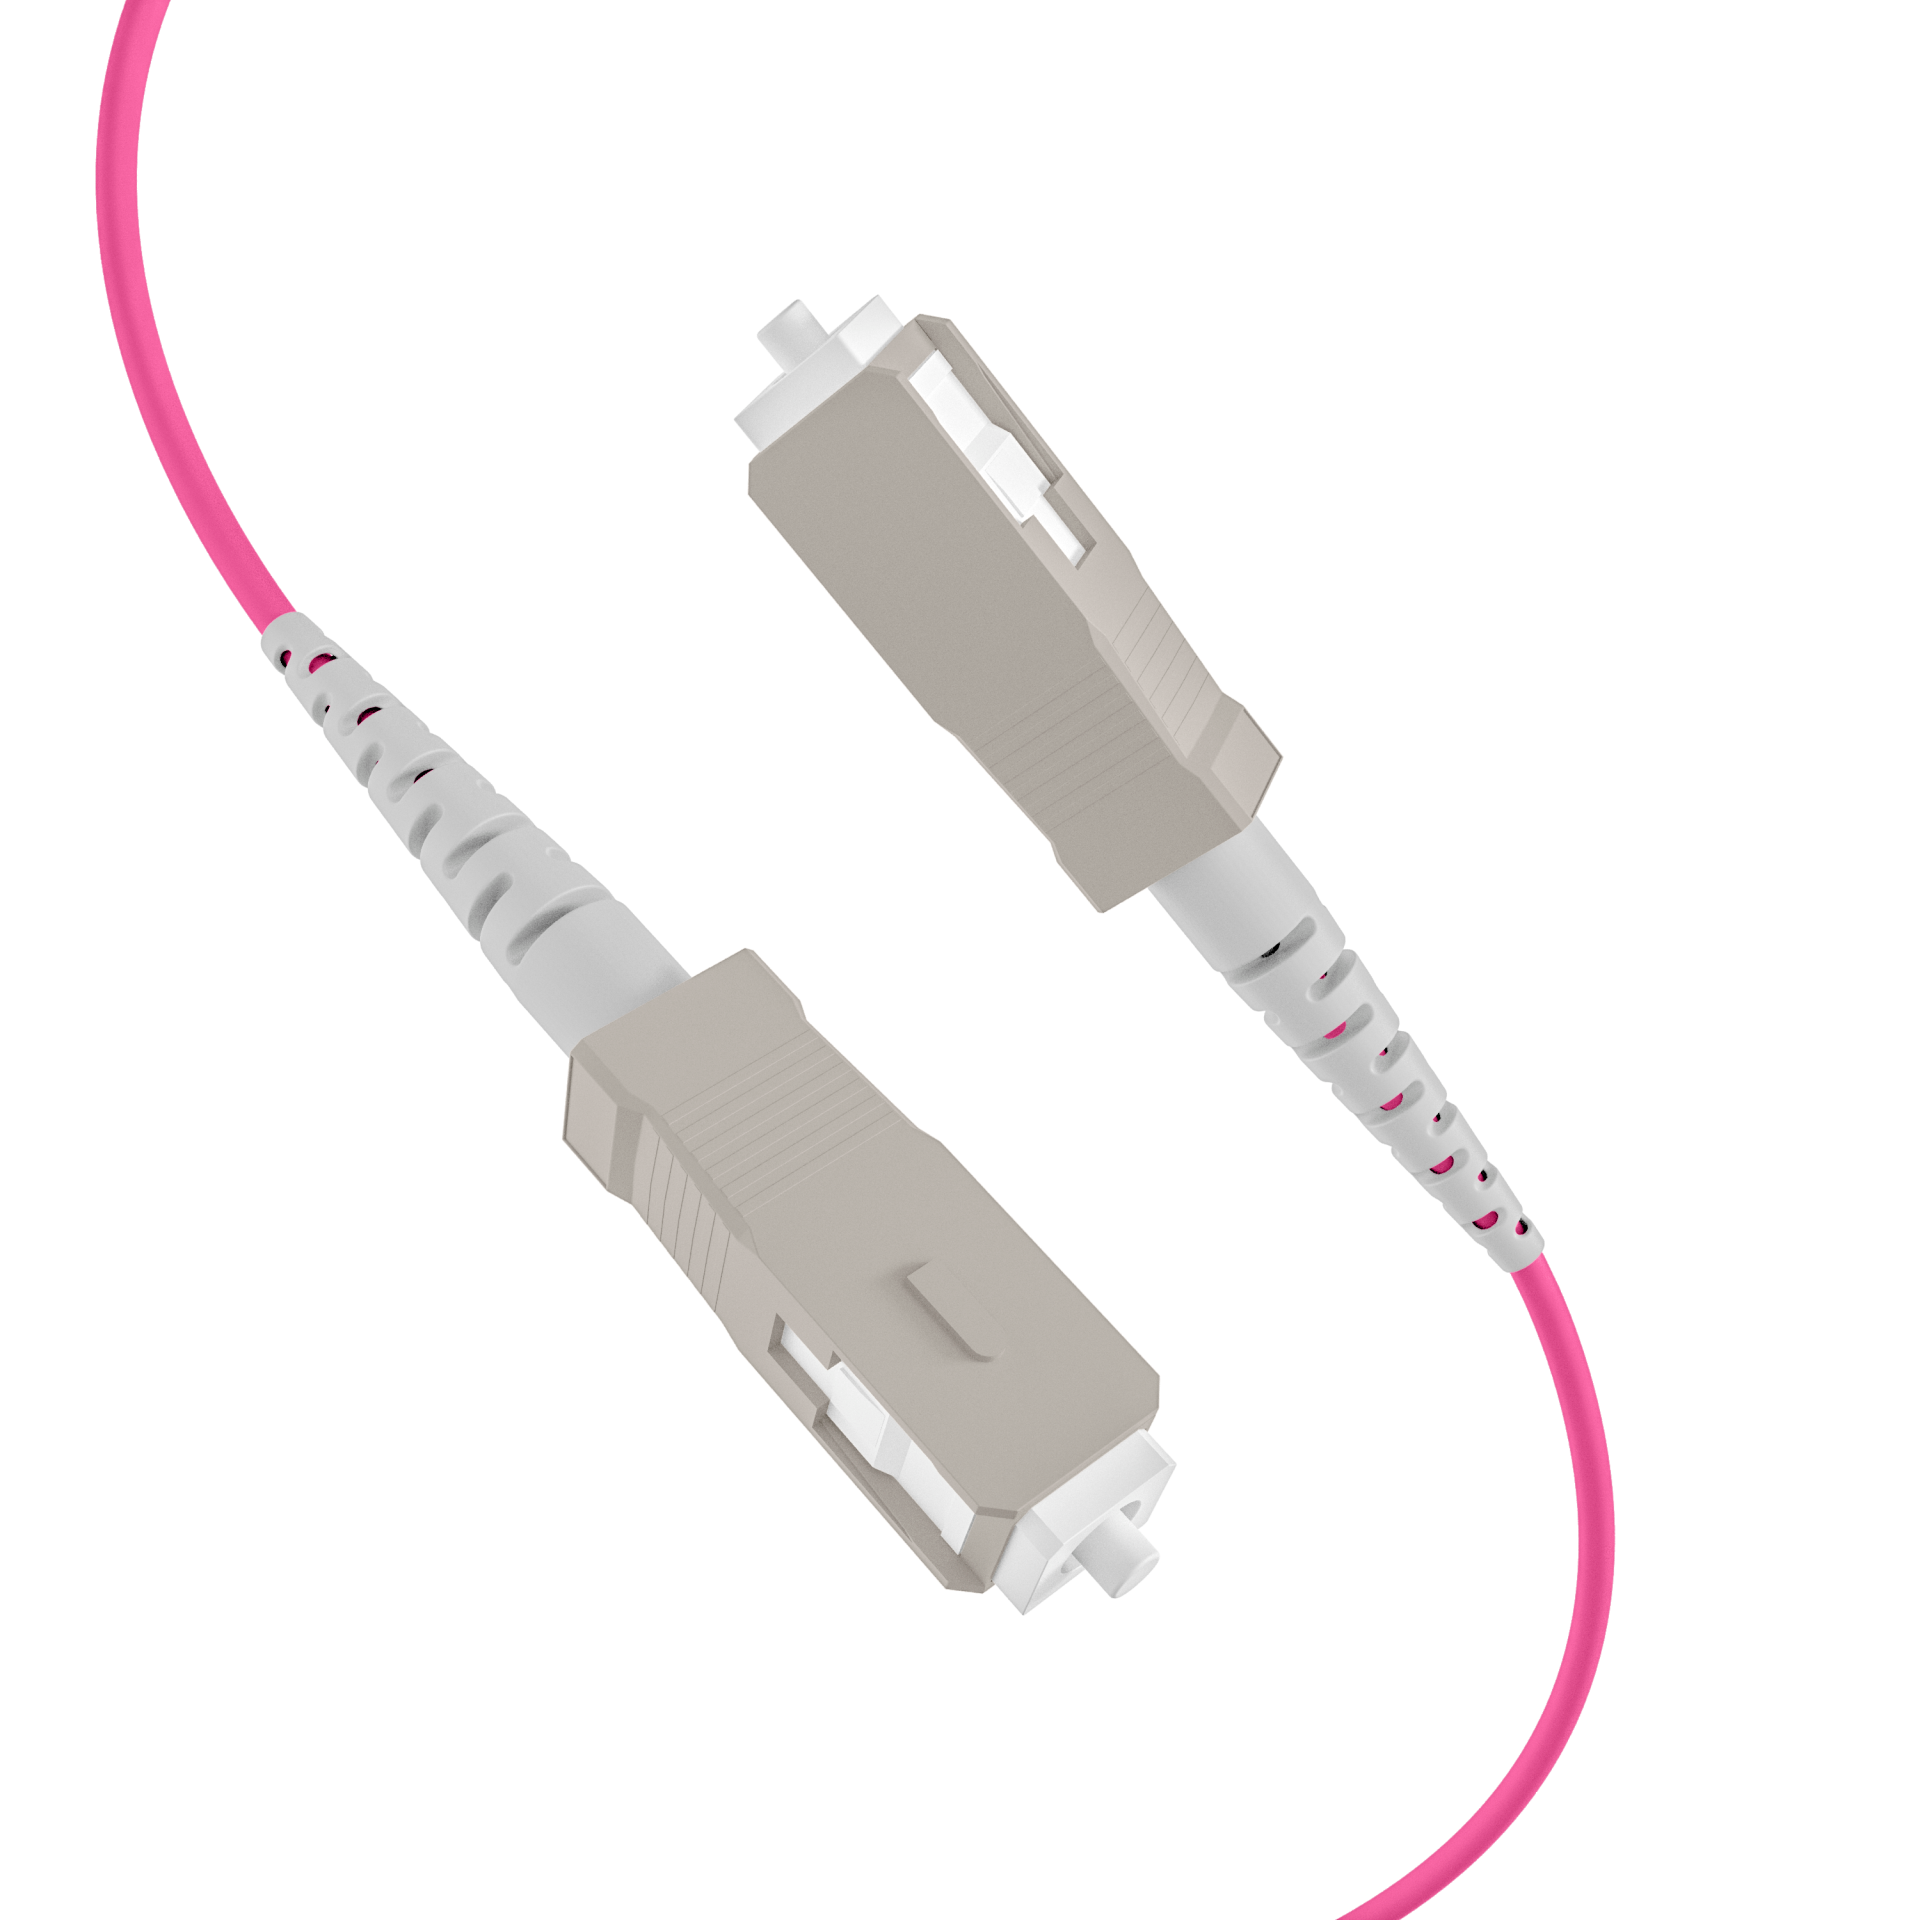 Trunk cable U-DQ(ZN)BH OM4 8G (1x8) SC-SC,160m Dca LSZH